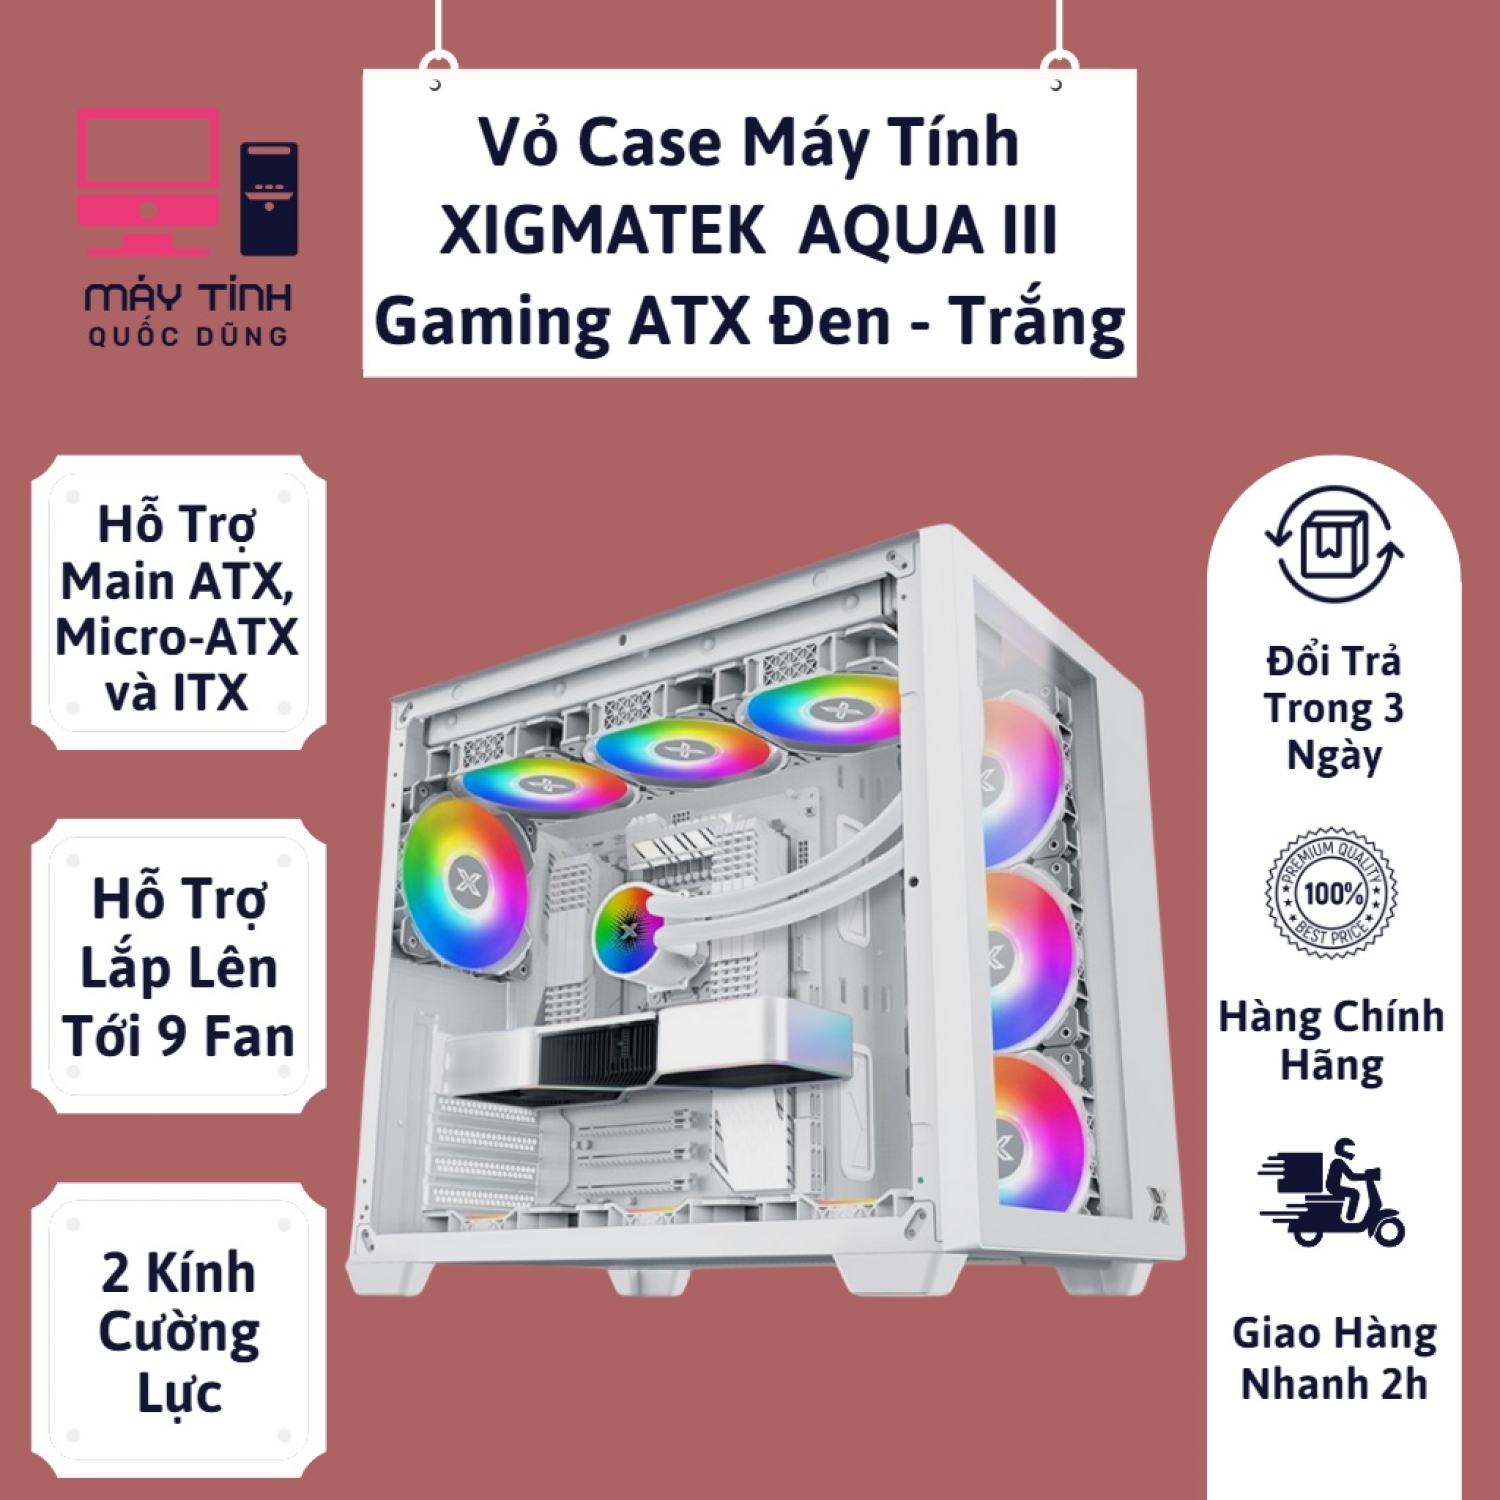 Vỏ Case Xigmatek AQUA III Gaming ATX, Micro ATX và ITX 2 thumbnail